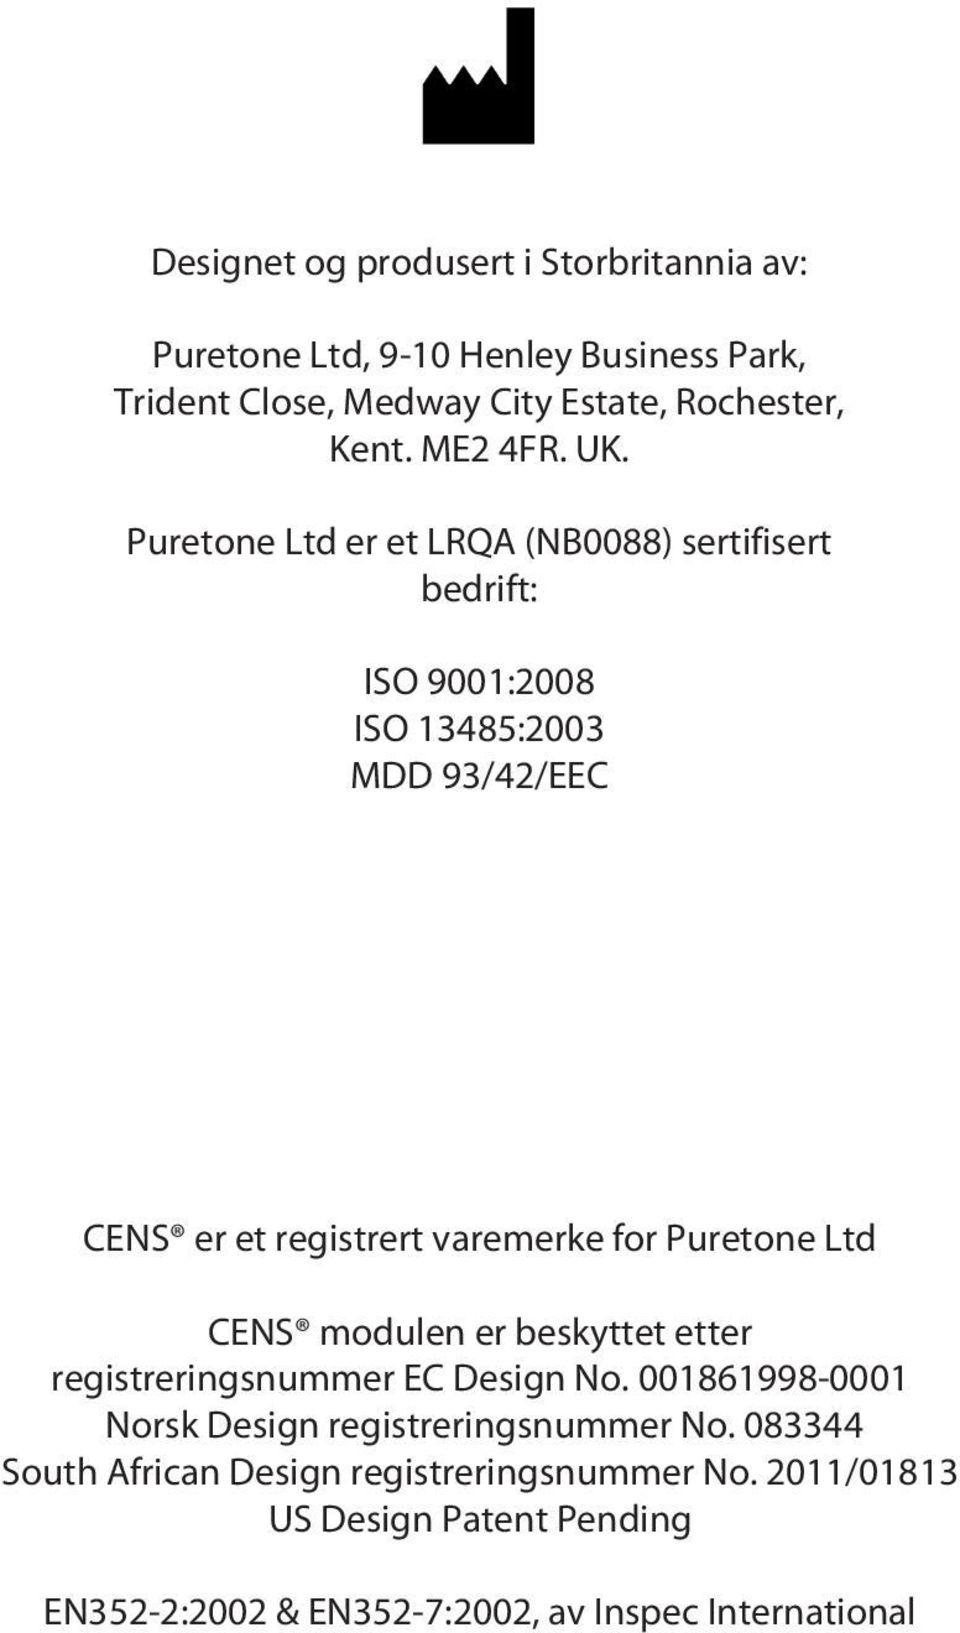 Puretone Ltd er et LRQA (NB0088) sertifisert bedrift: ISO 9001:2008 ISO 13485:2003 MDD 93/42/EEC CENS er et registrert varemerke for